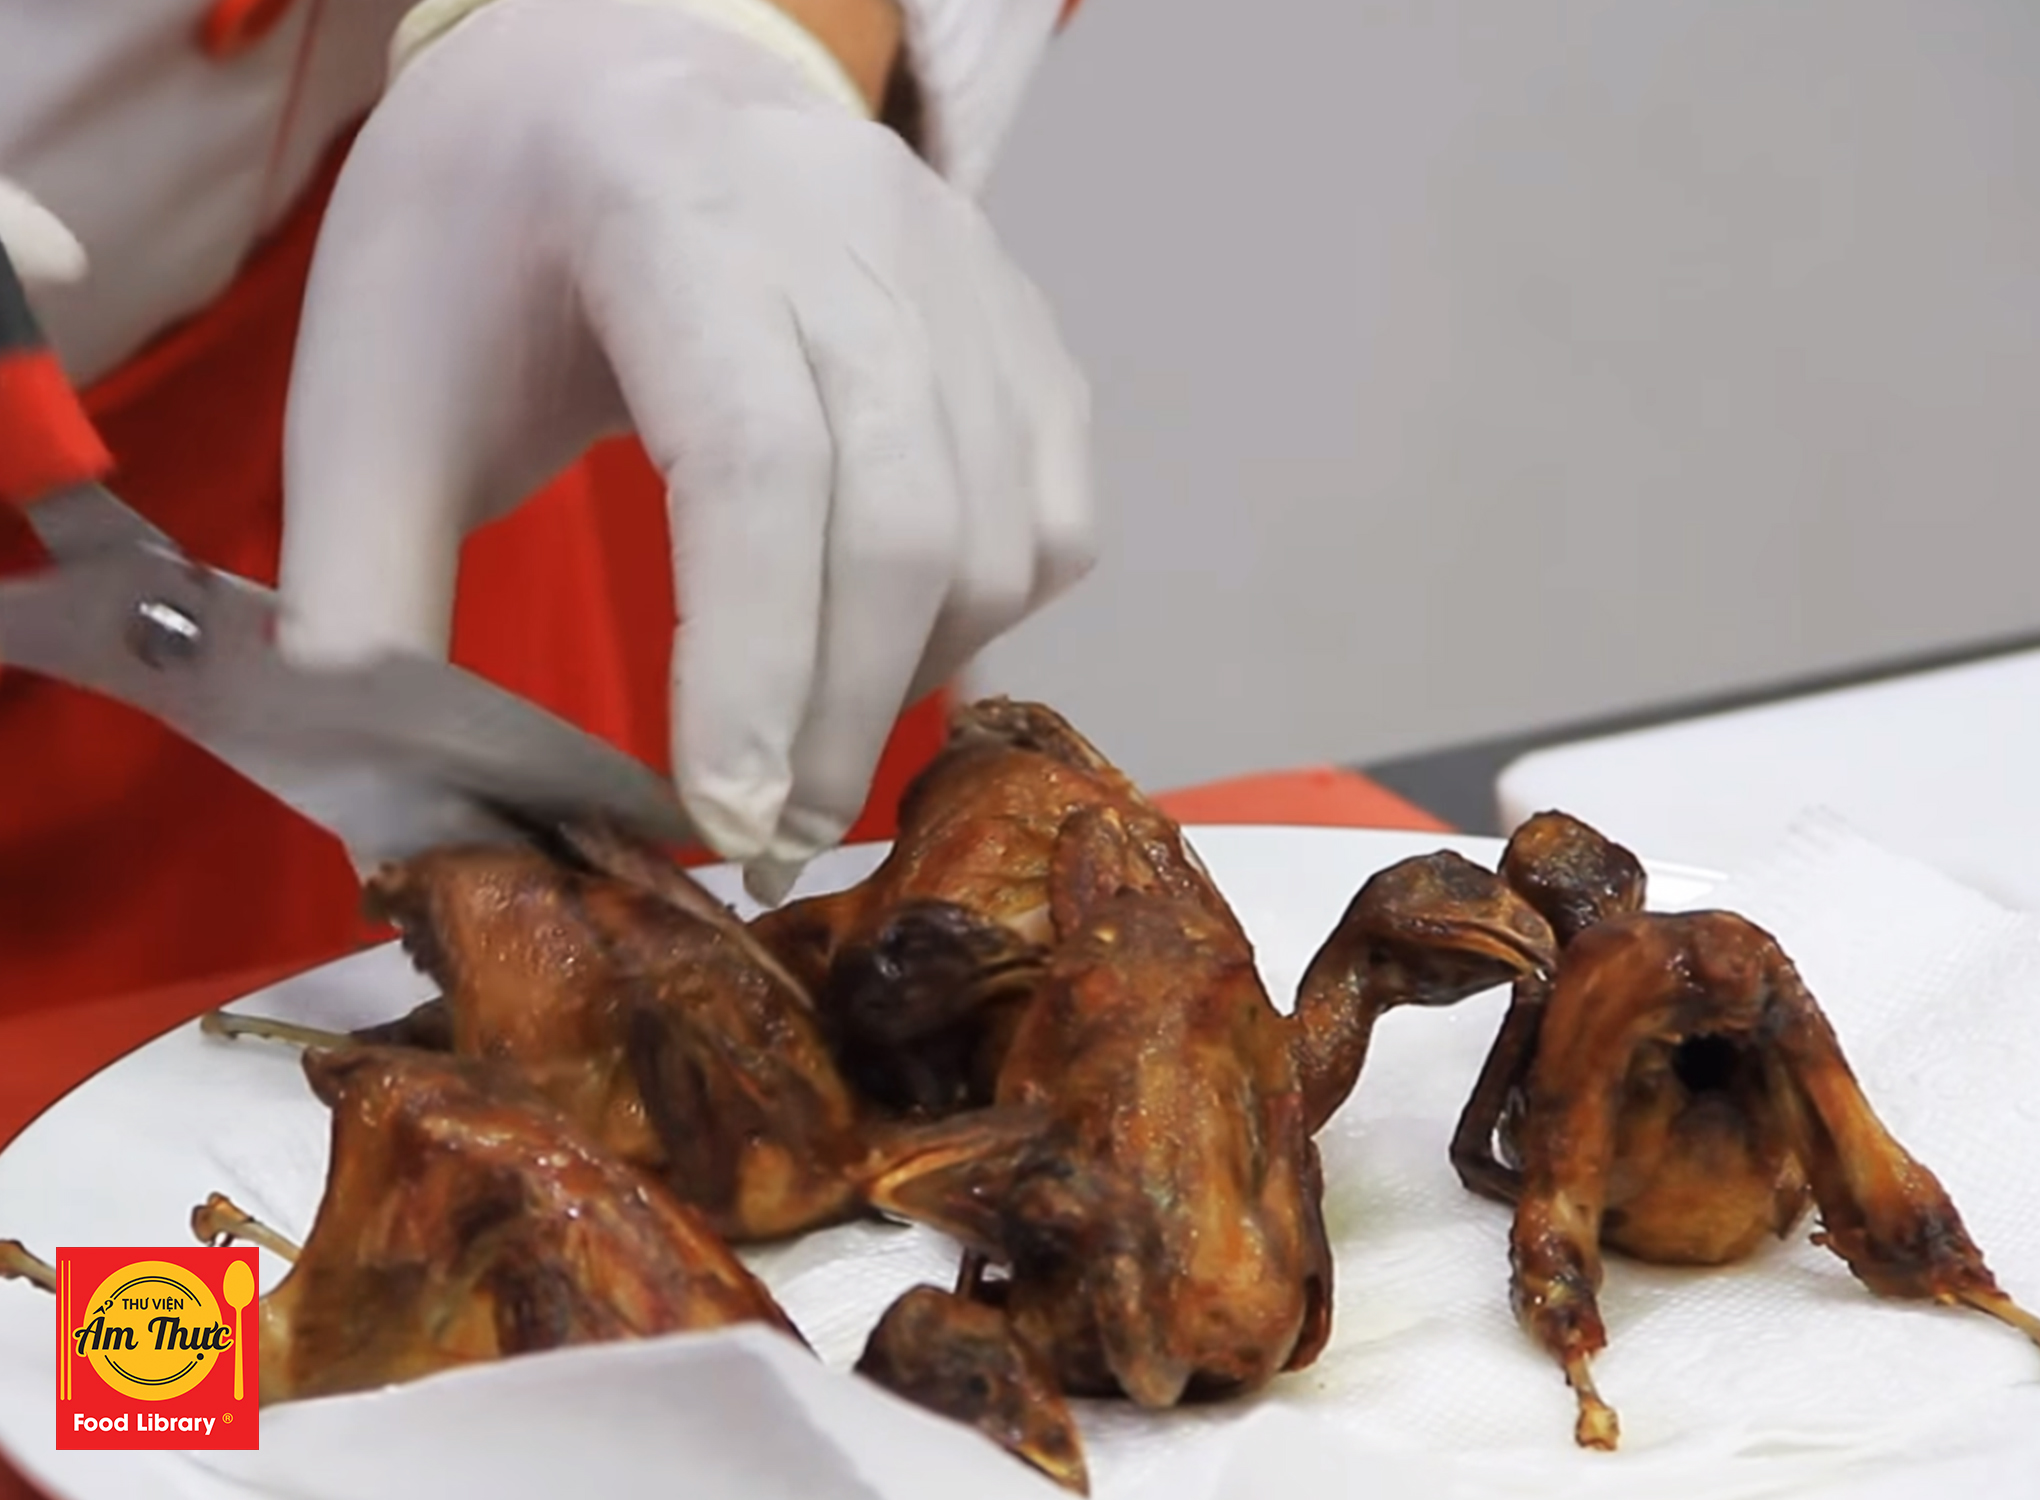 Thịt con bé tí được ví là “sâm động vật”, nấu lên ngon và bổ hơn thịt gà nhưng ít người biết ăn - ảnh 17